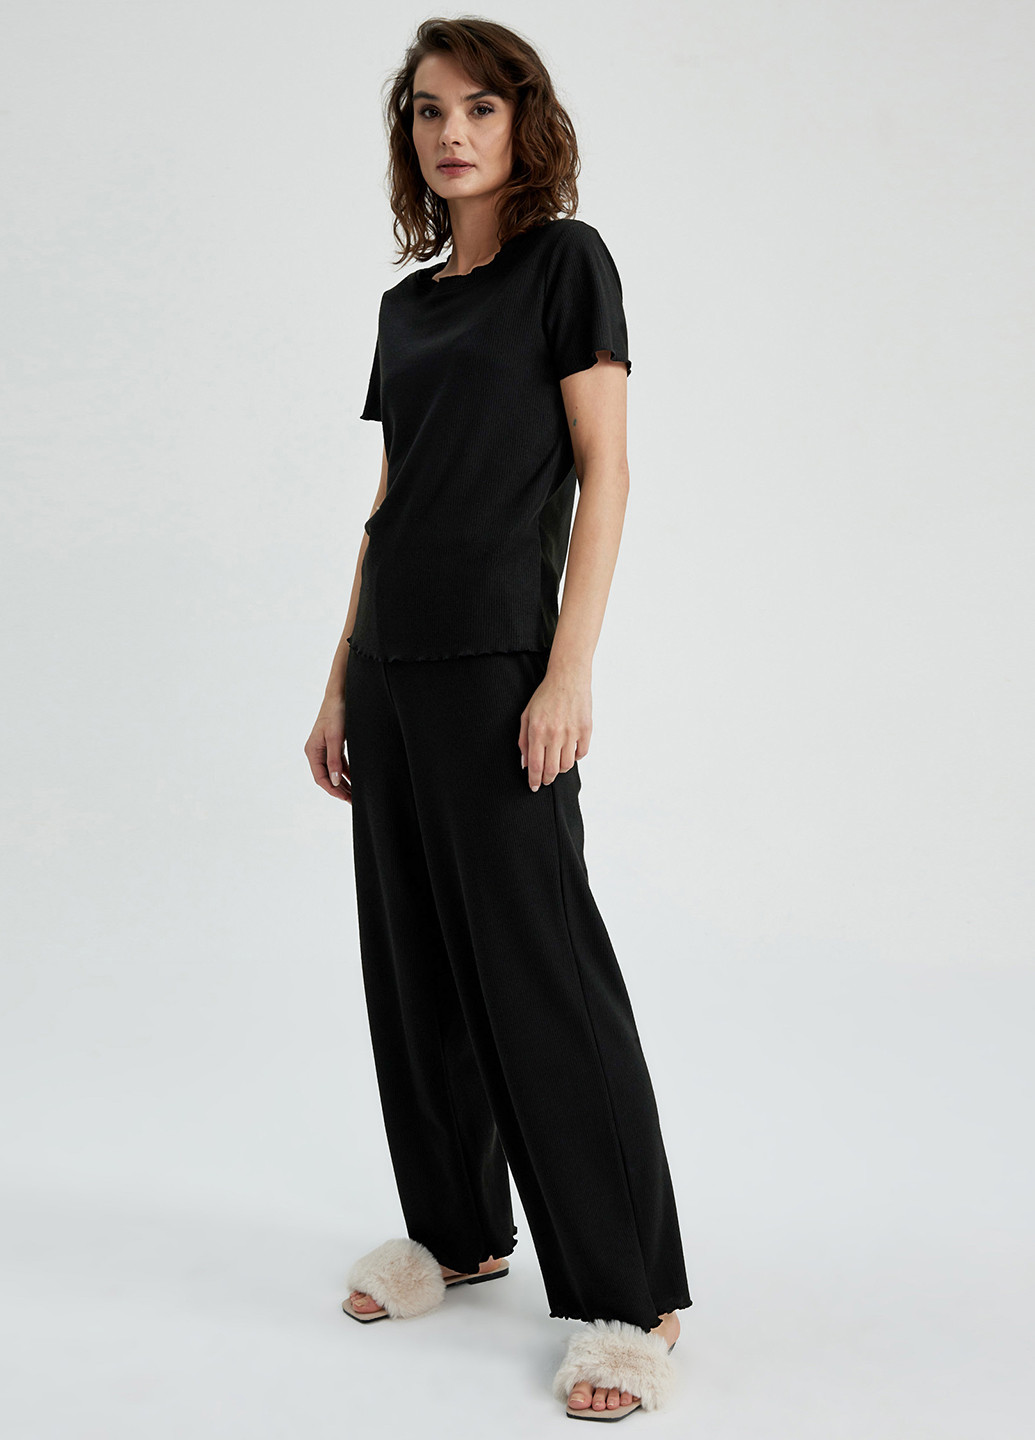 Черная всесезон пижама (футболка, брюки) футболка + брюки DeFacto